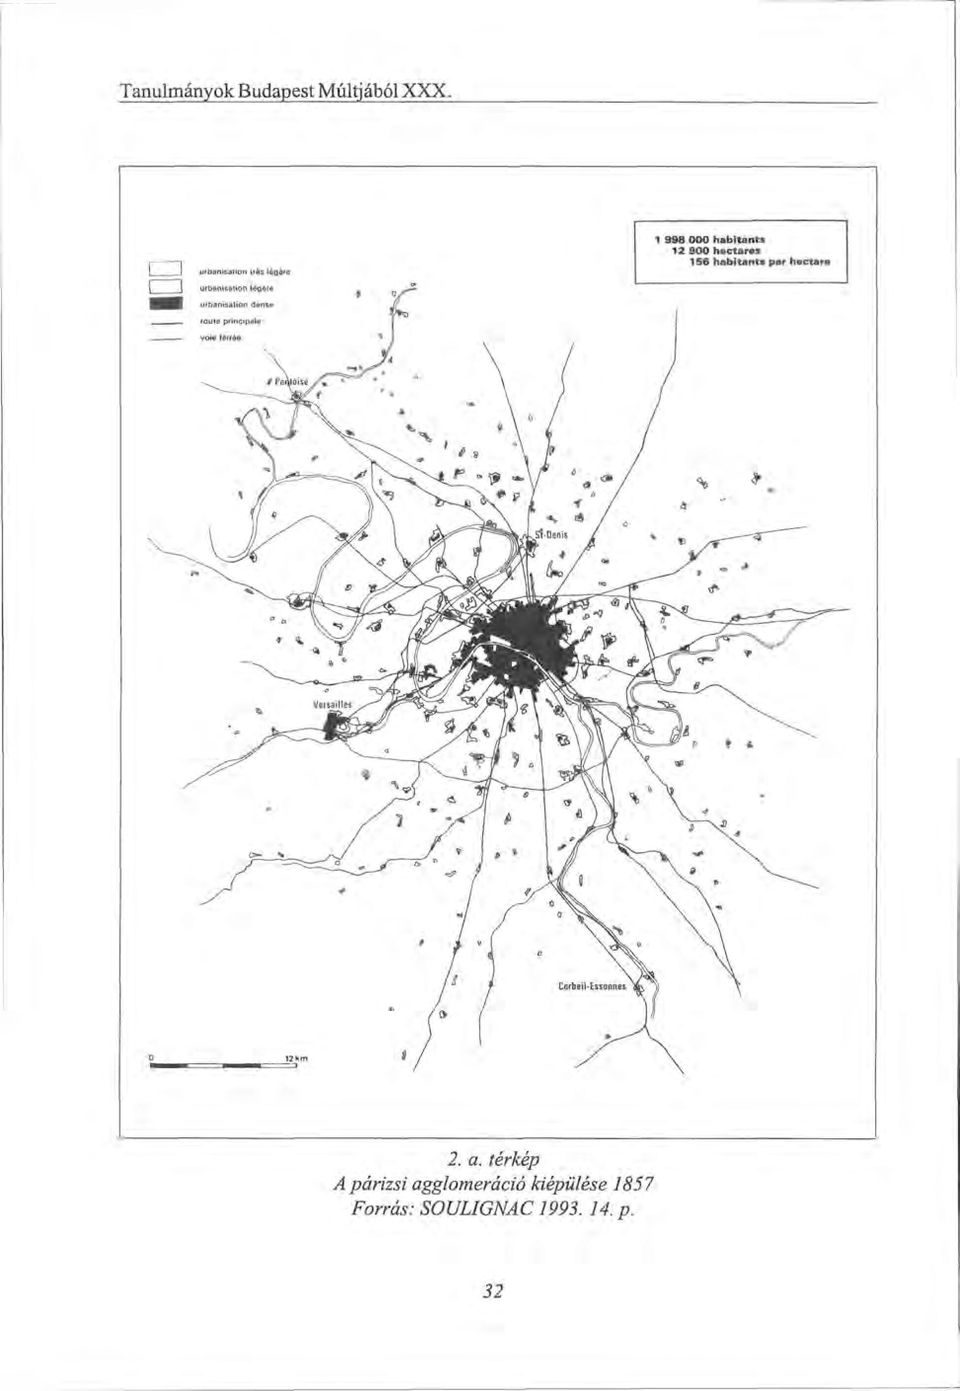 térkép A párizsi agglomeráció